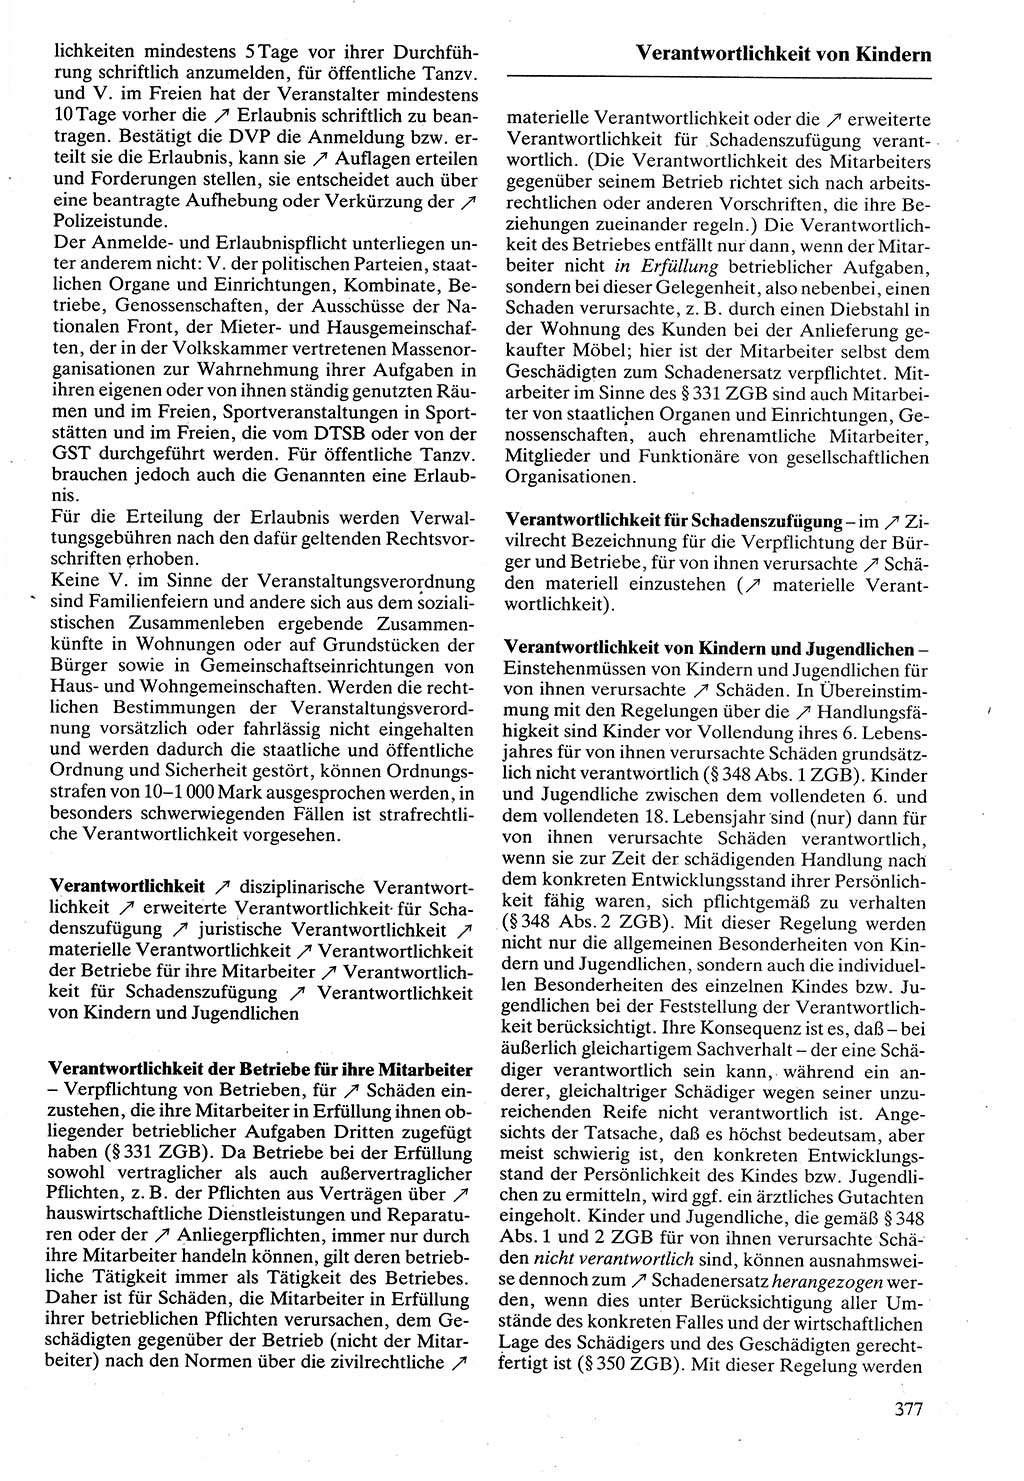 Rechtslexikon [Deutsche Demokratische Republik (DDR)] 1988, Seite 377 (Rechtslex. DDR 1988, S. 377)